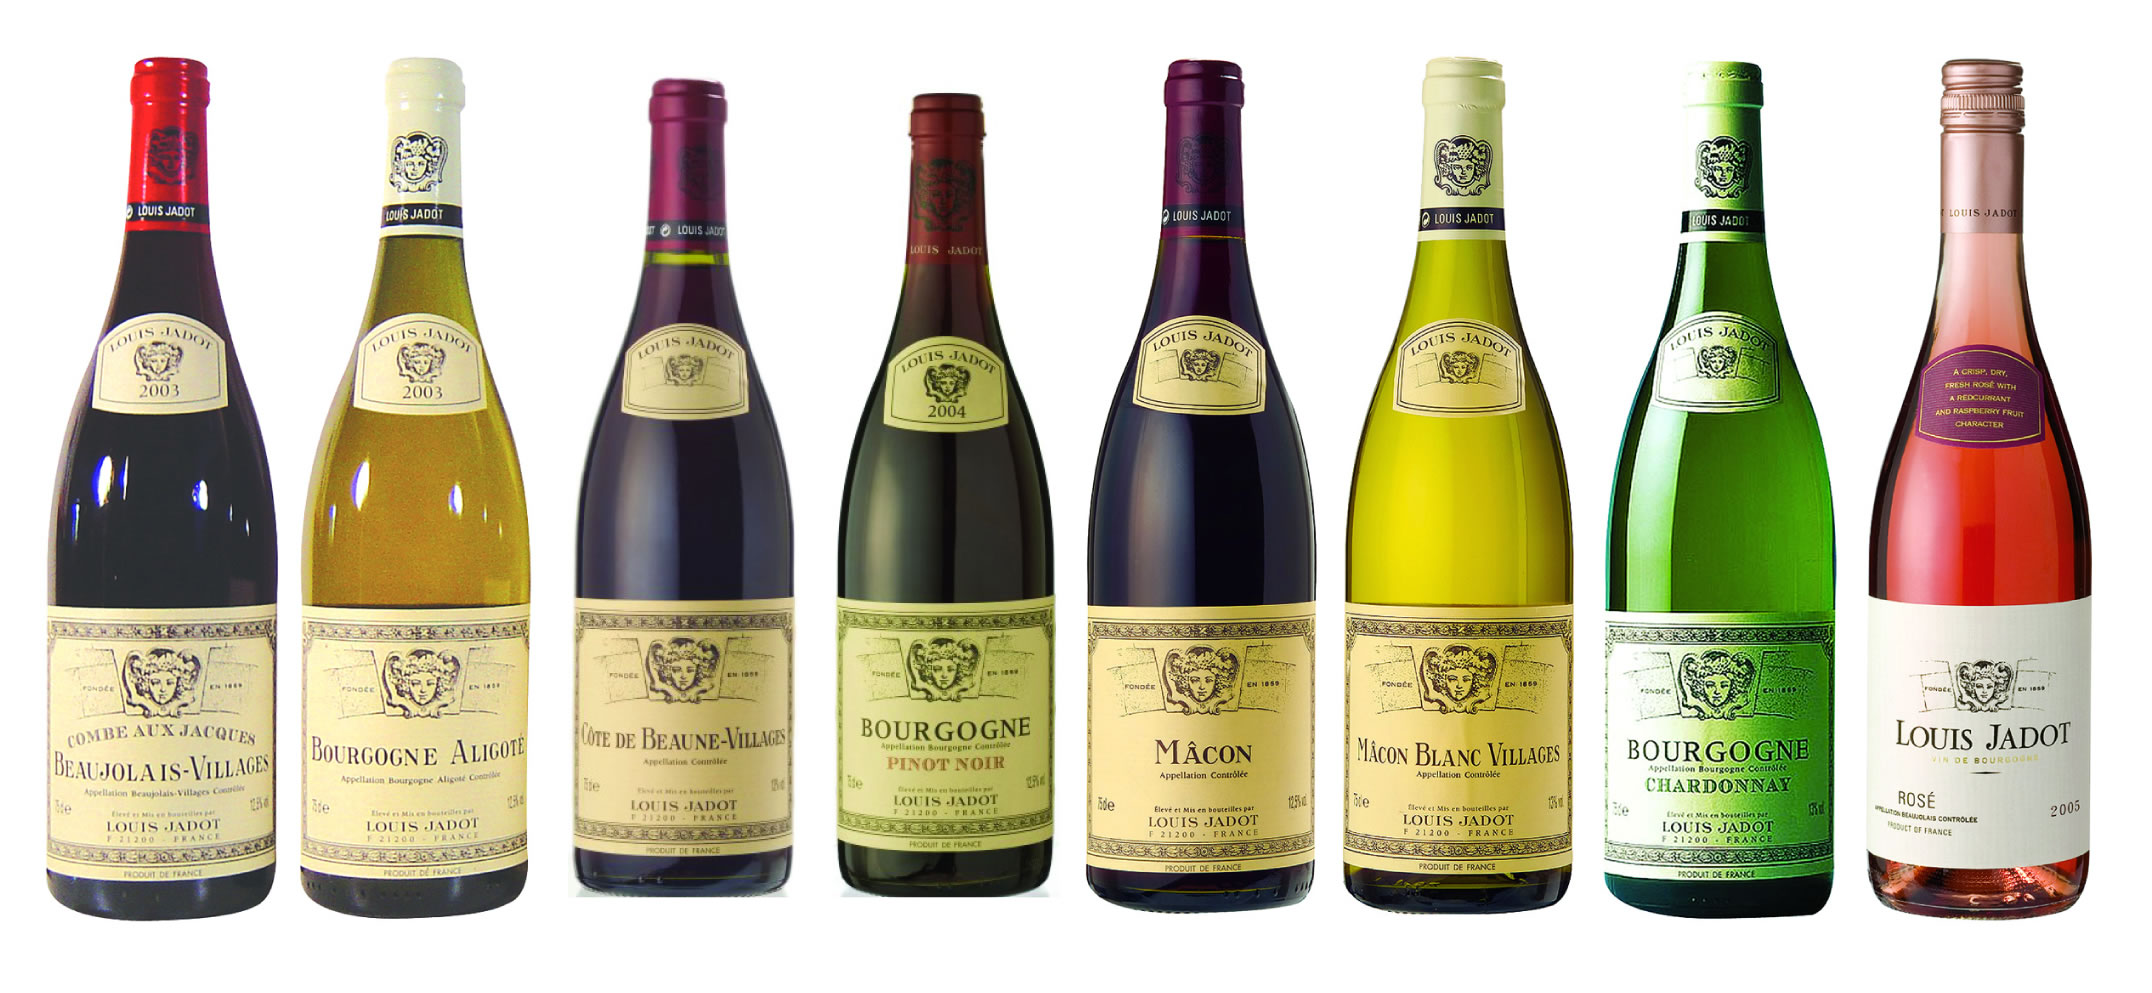 Качество бургундских вин: что определяет качество и вкус бургундского вина, на что ориентироваться при выборе и покупке бургундского вина, лучшие вина из Бургундии, бургундские вина, французские вина, как выбрать хорошее французское вино, как выбрать хорошее вино, что влияет на качество вина, франция, путеводитель по Франции, Бургундия, путеводитель по Бургундии